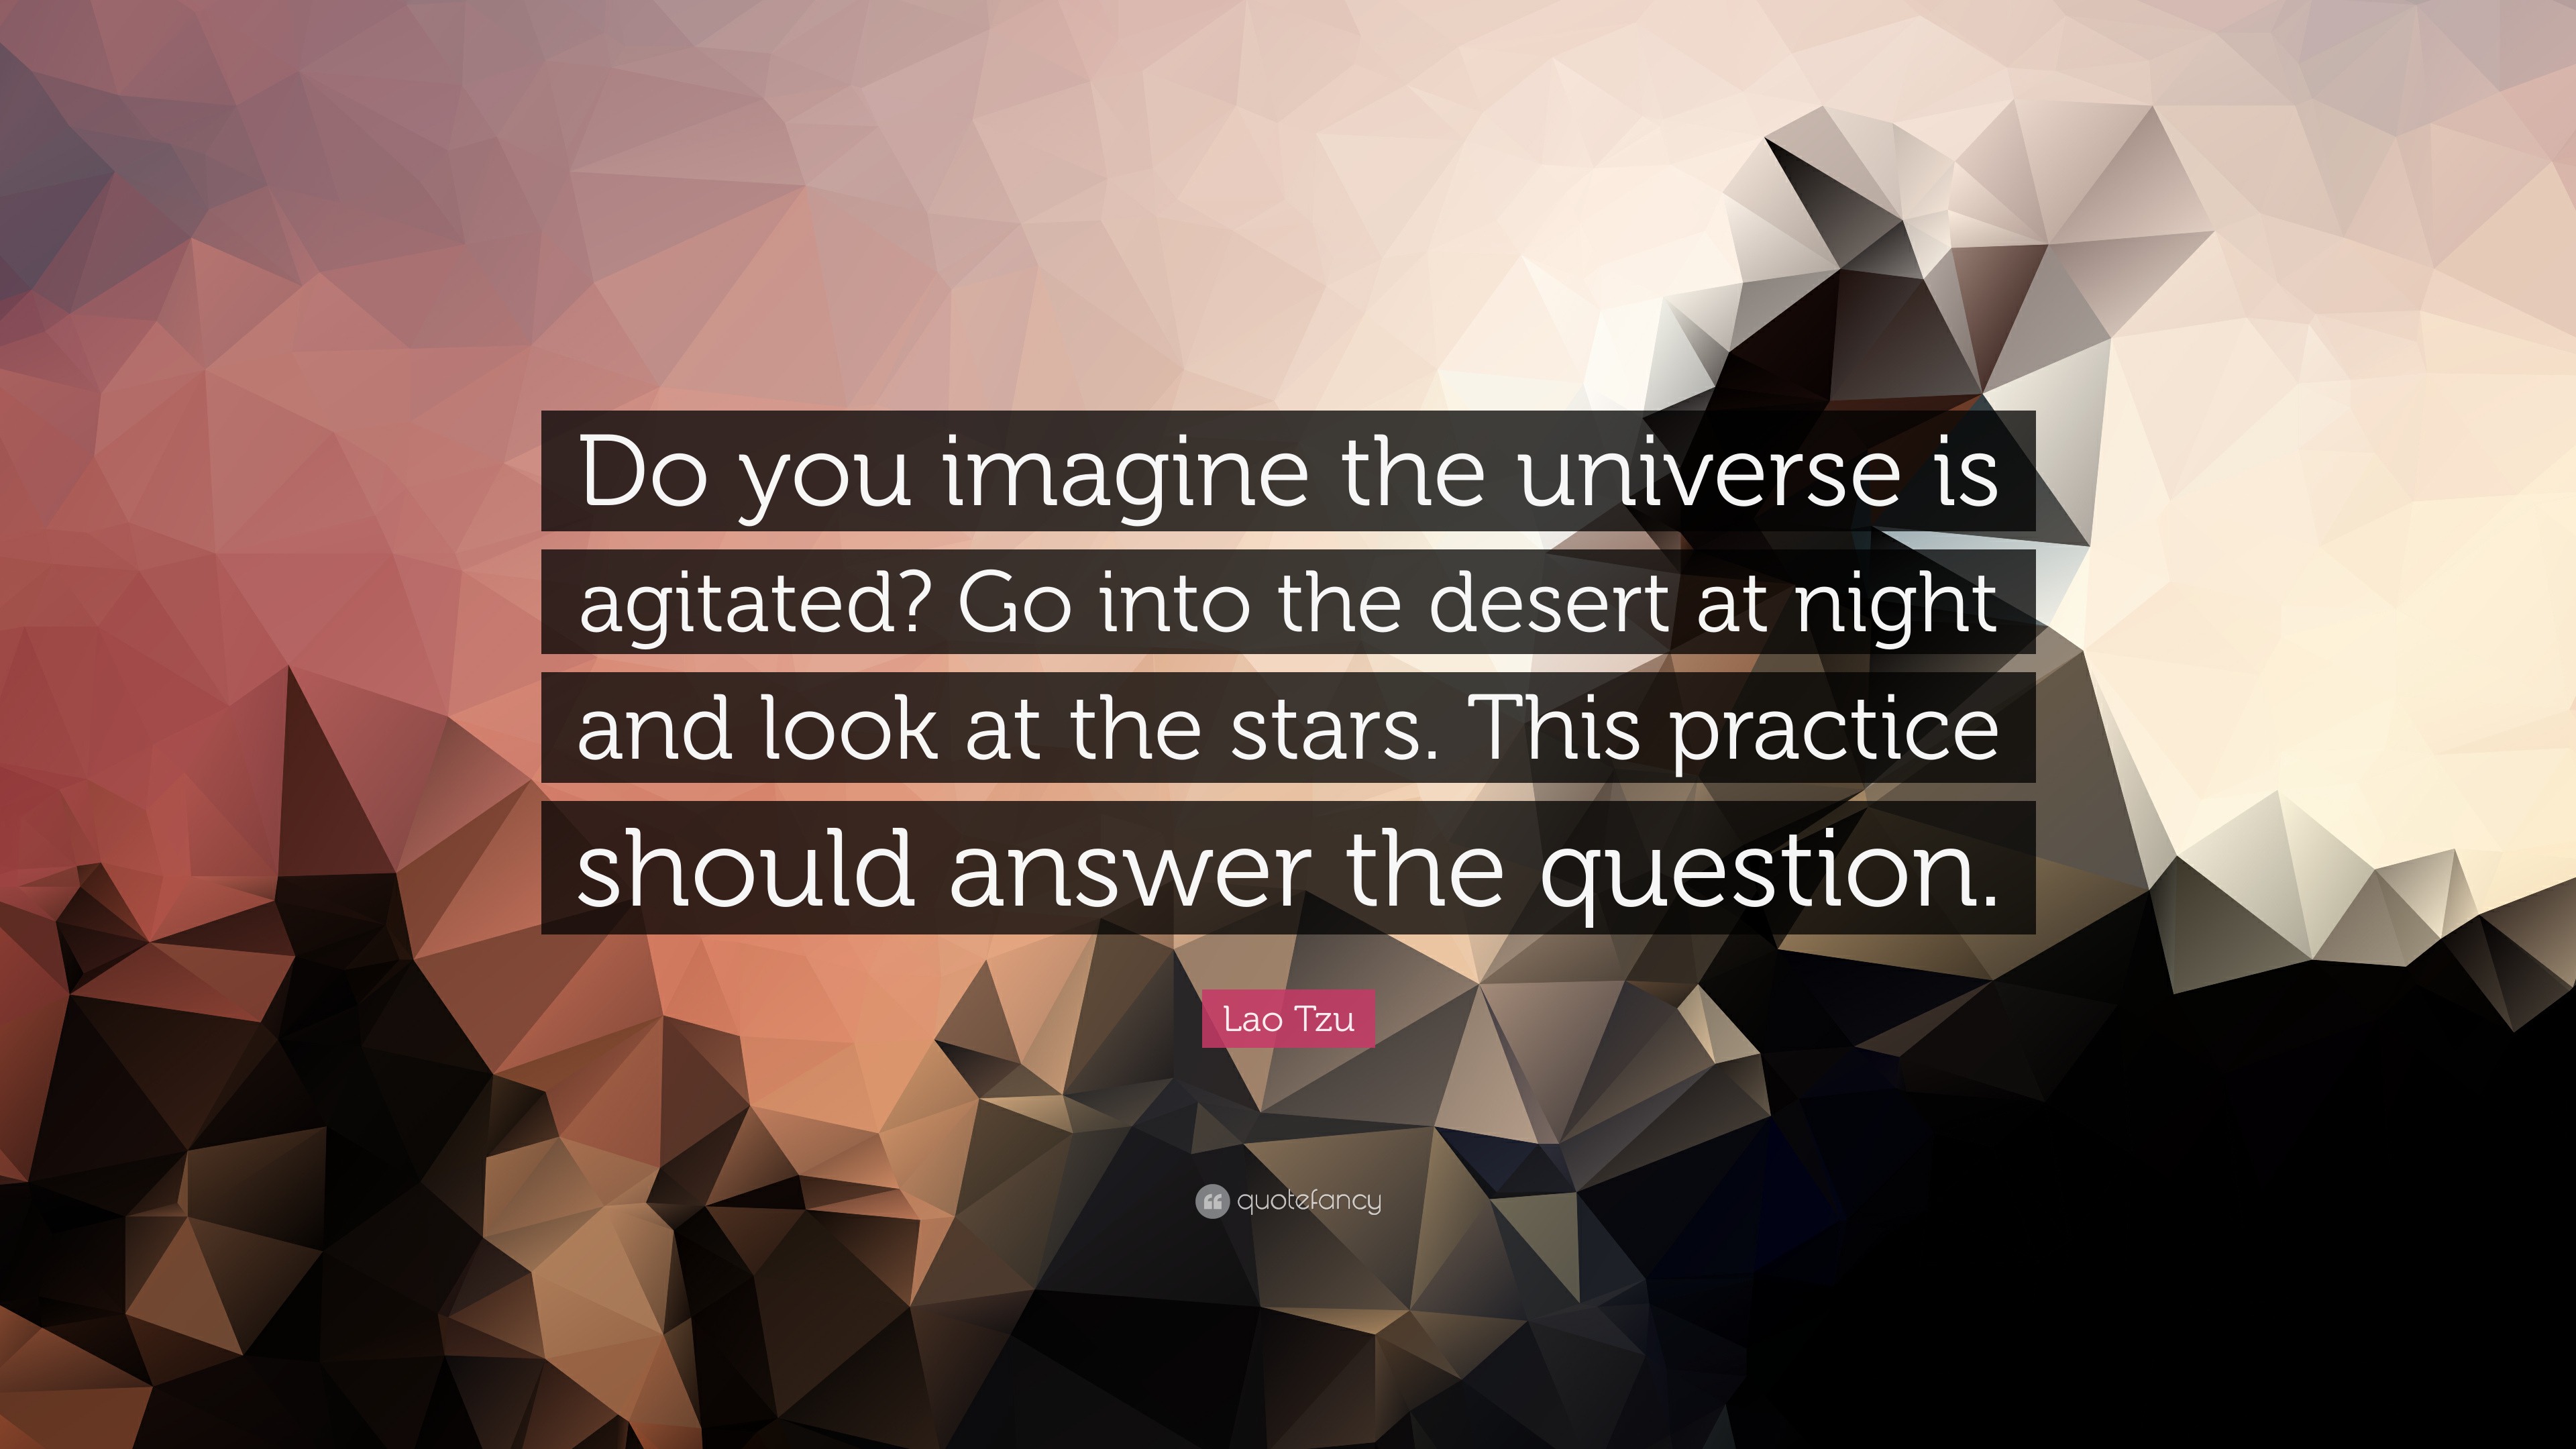 Imagine the Universe!